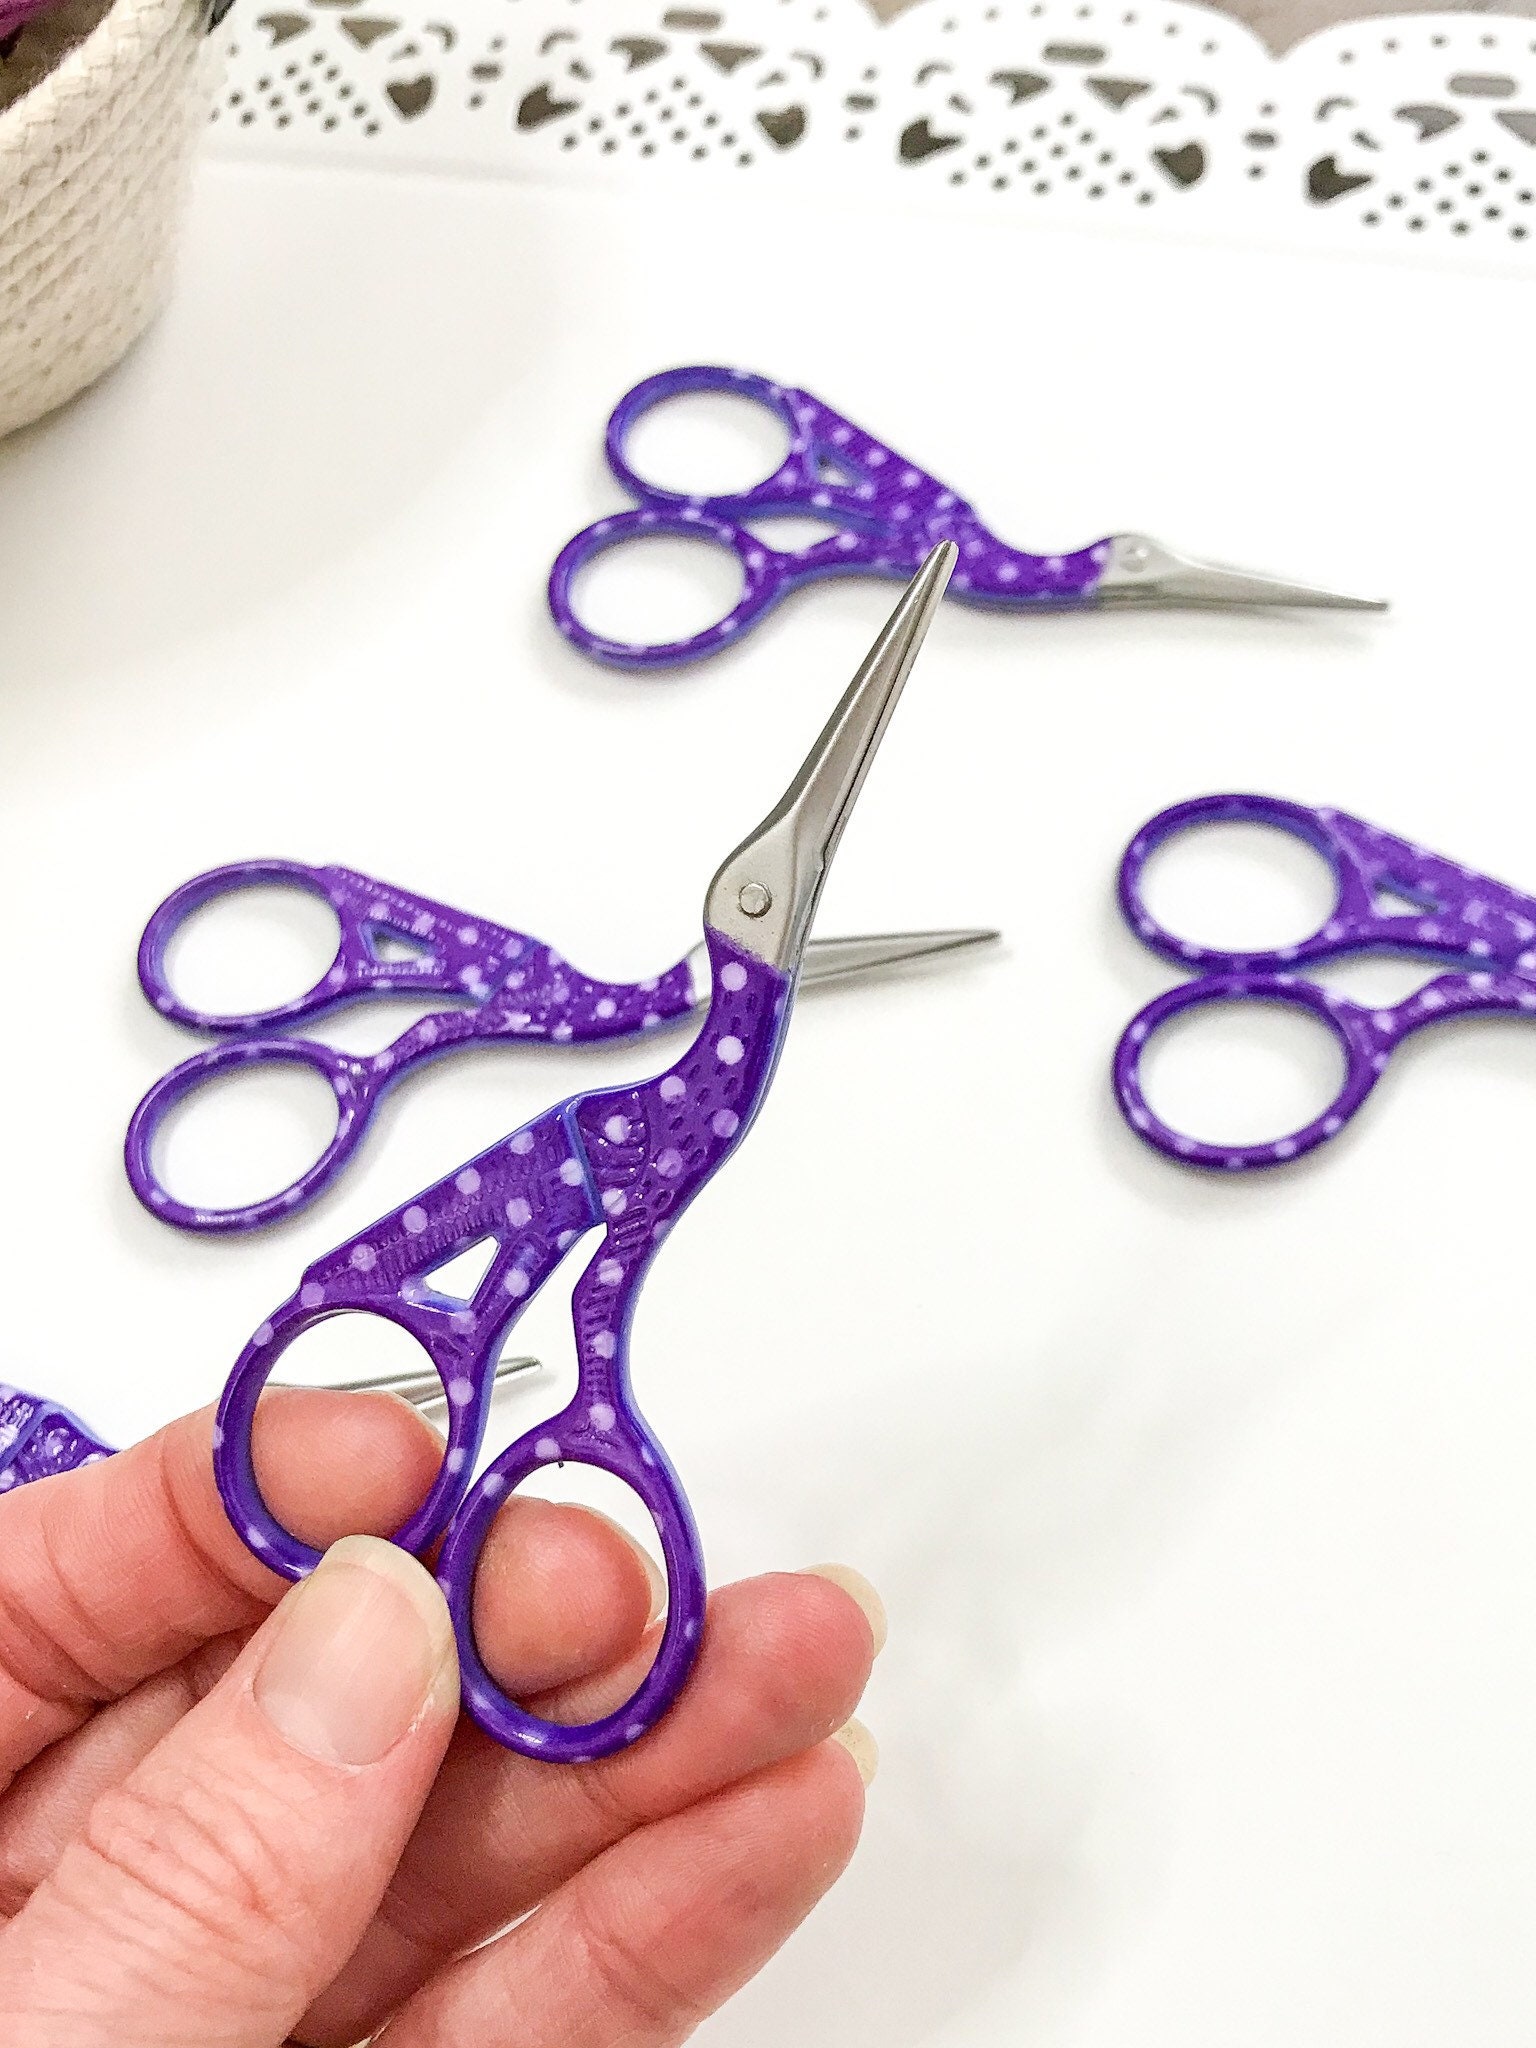 Stork Scissors - Purple Metallic - Quiltak Quilt Basting System